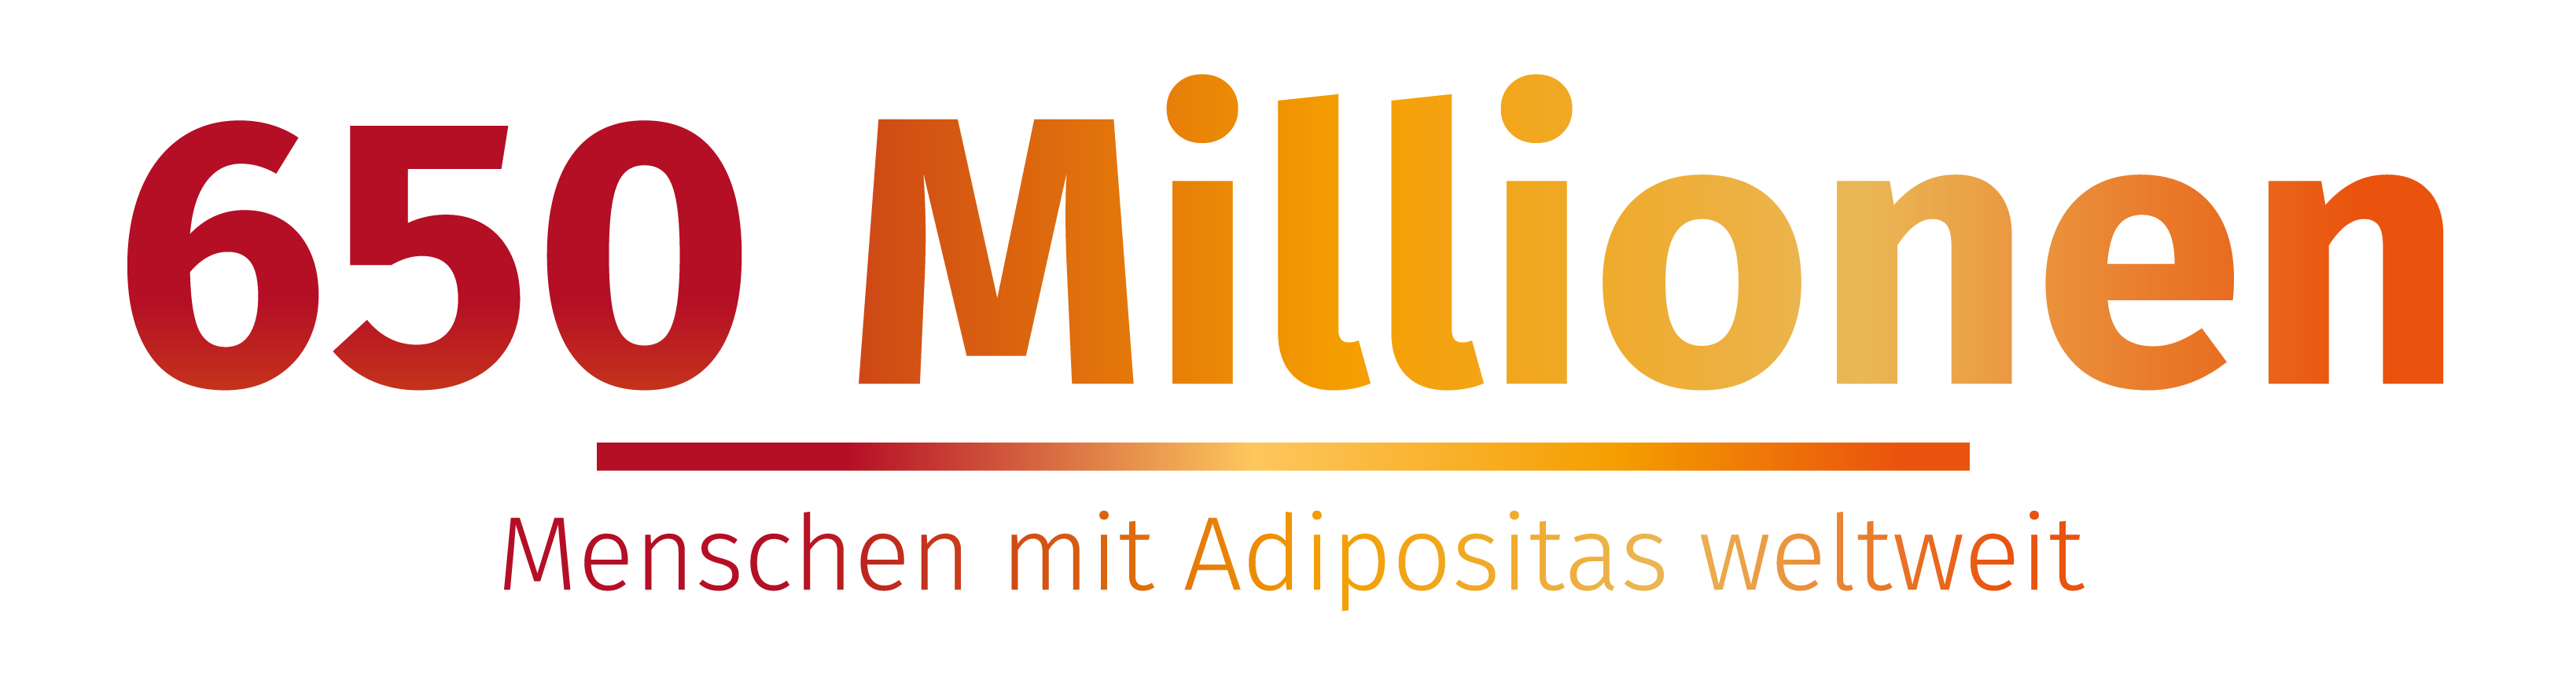 650 Millionen Menschen mit Adipositas weltweit